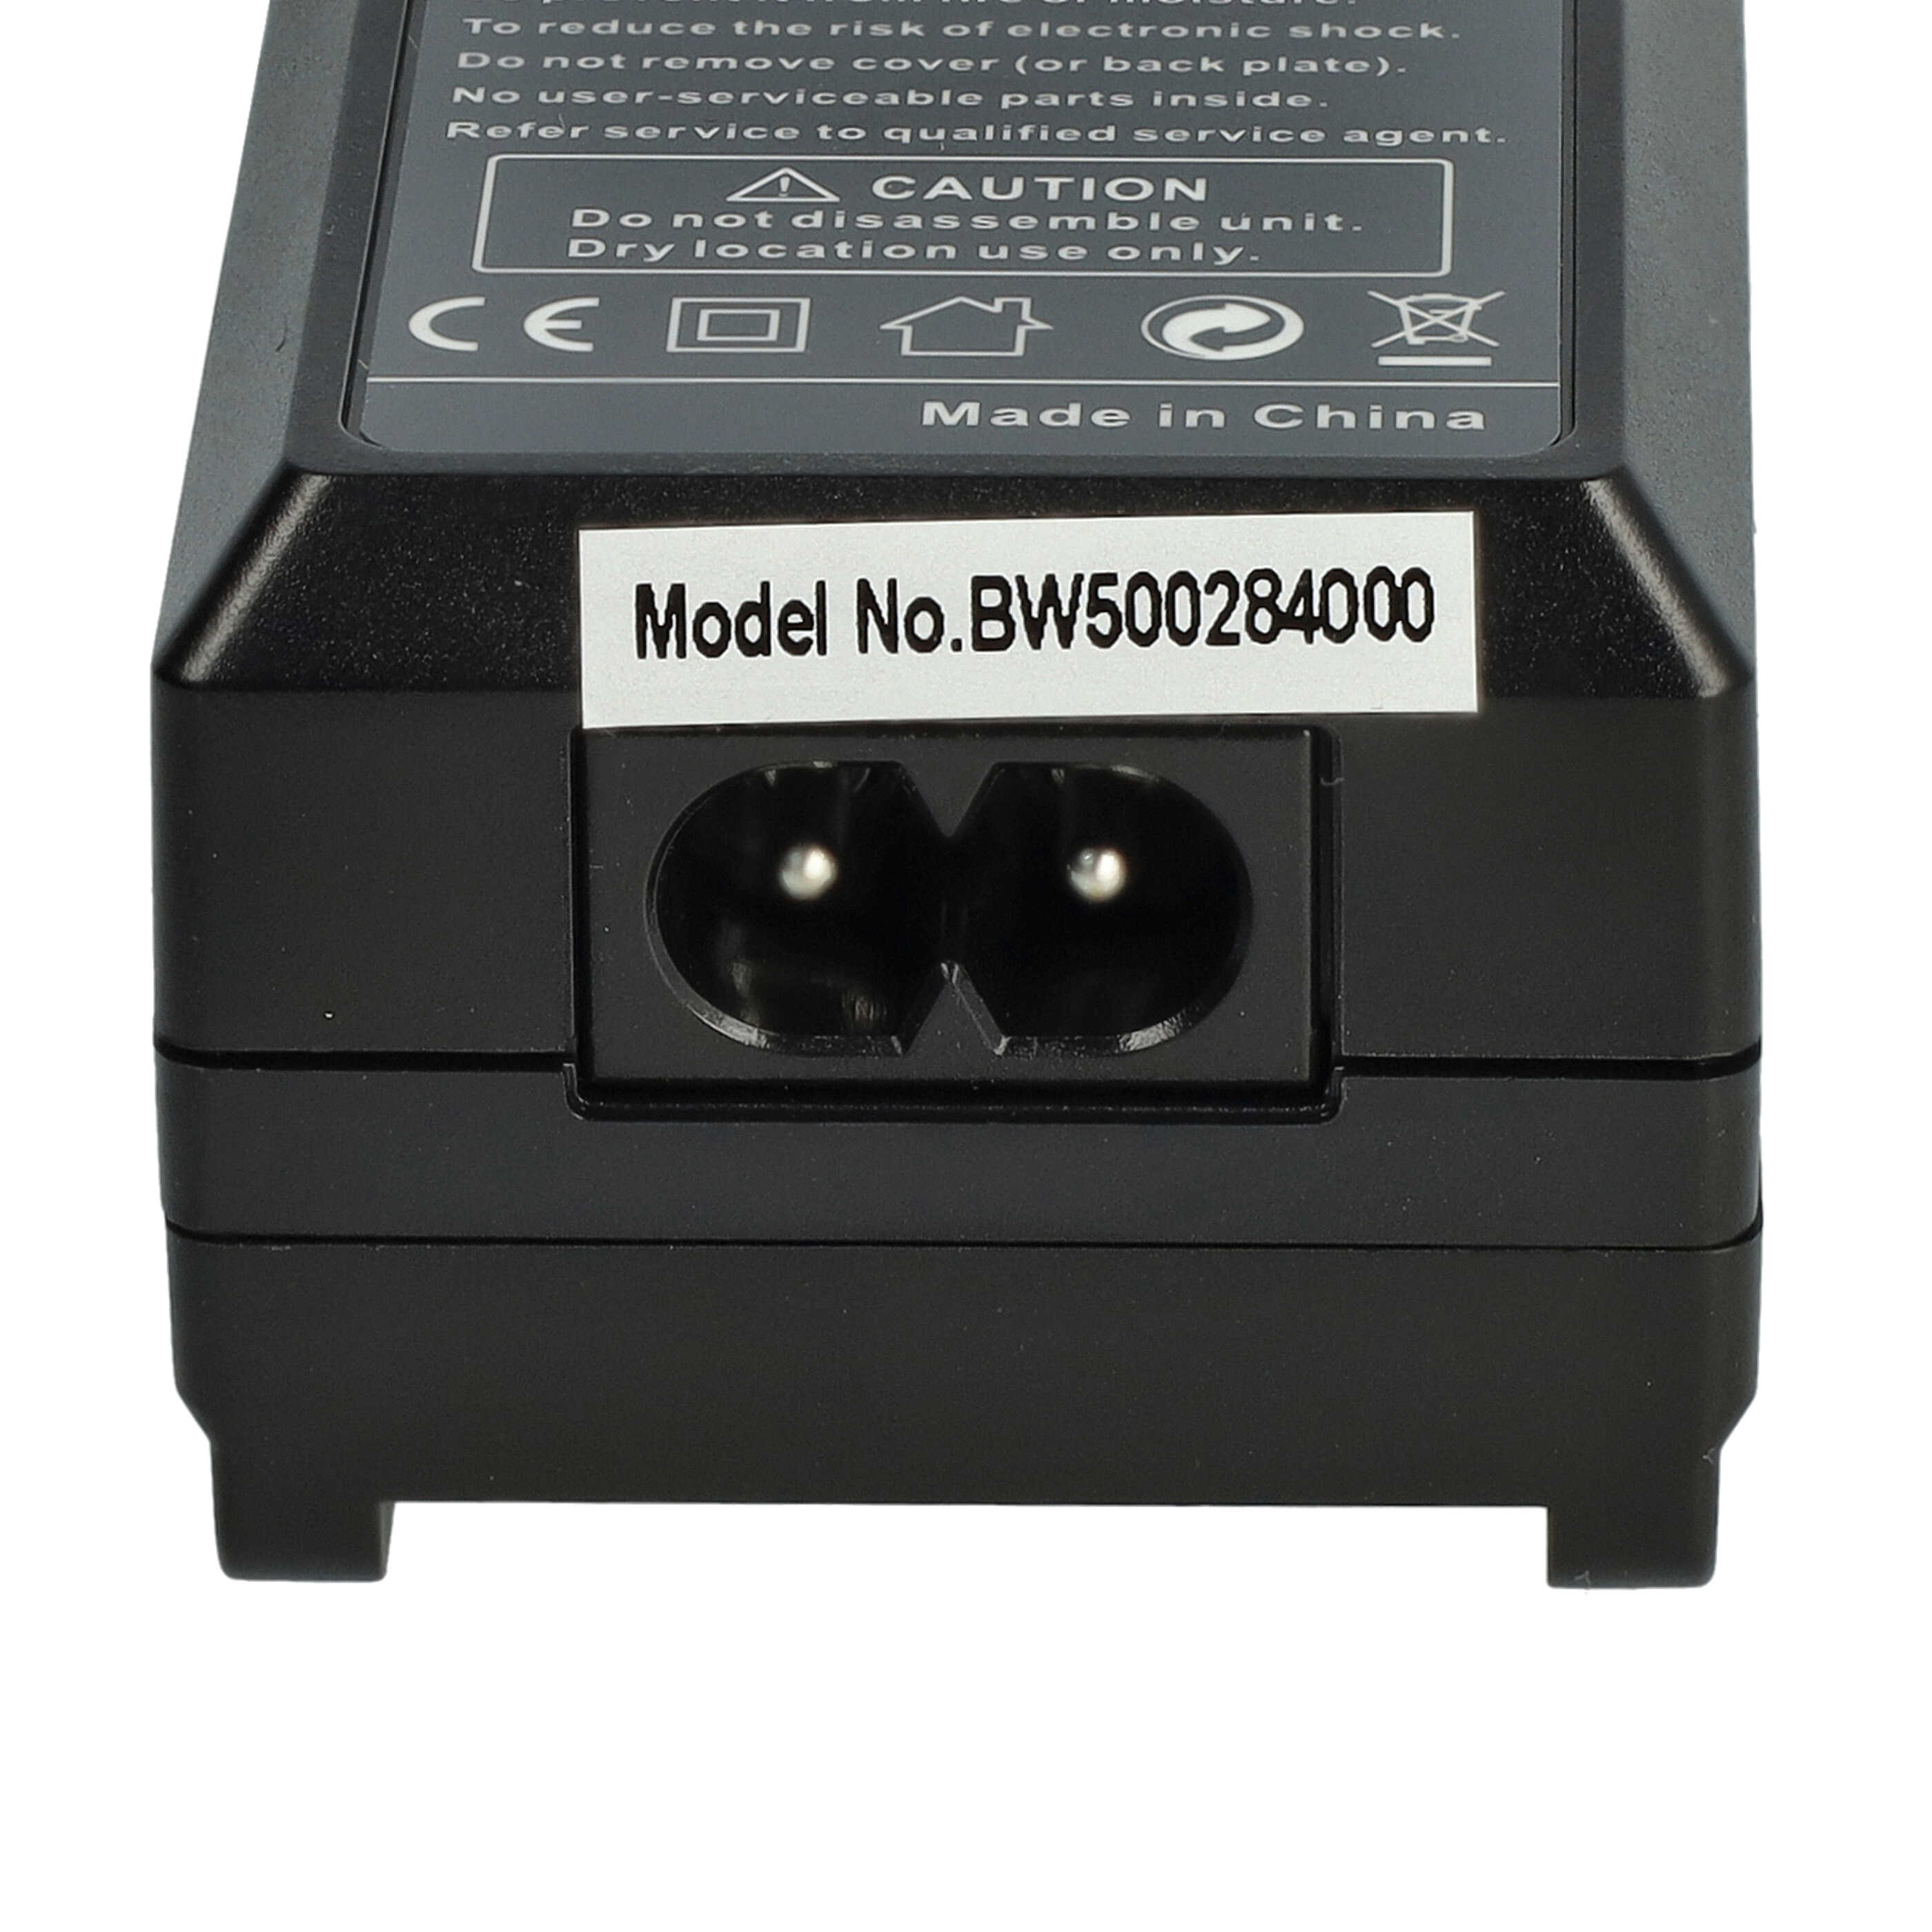 Caricabatterie + adattatore da auto per fotocamera Action Cam - 0,6A 4,2V 88,5cm